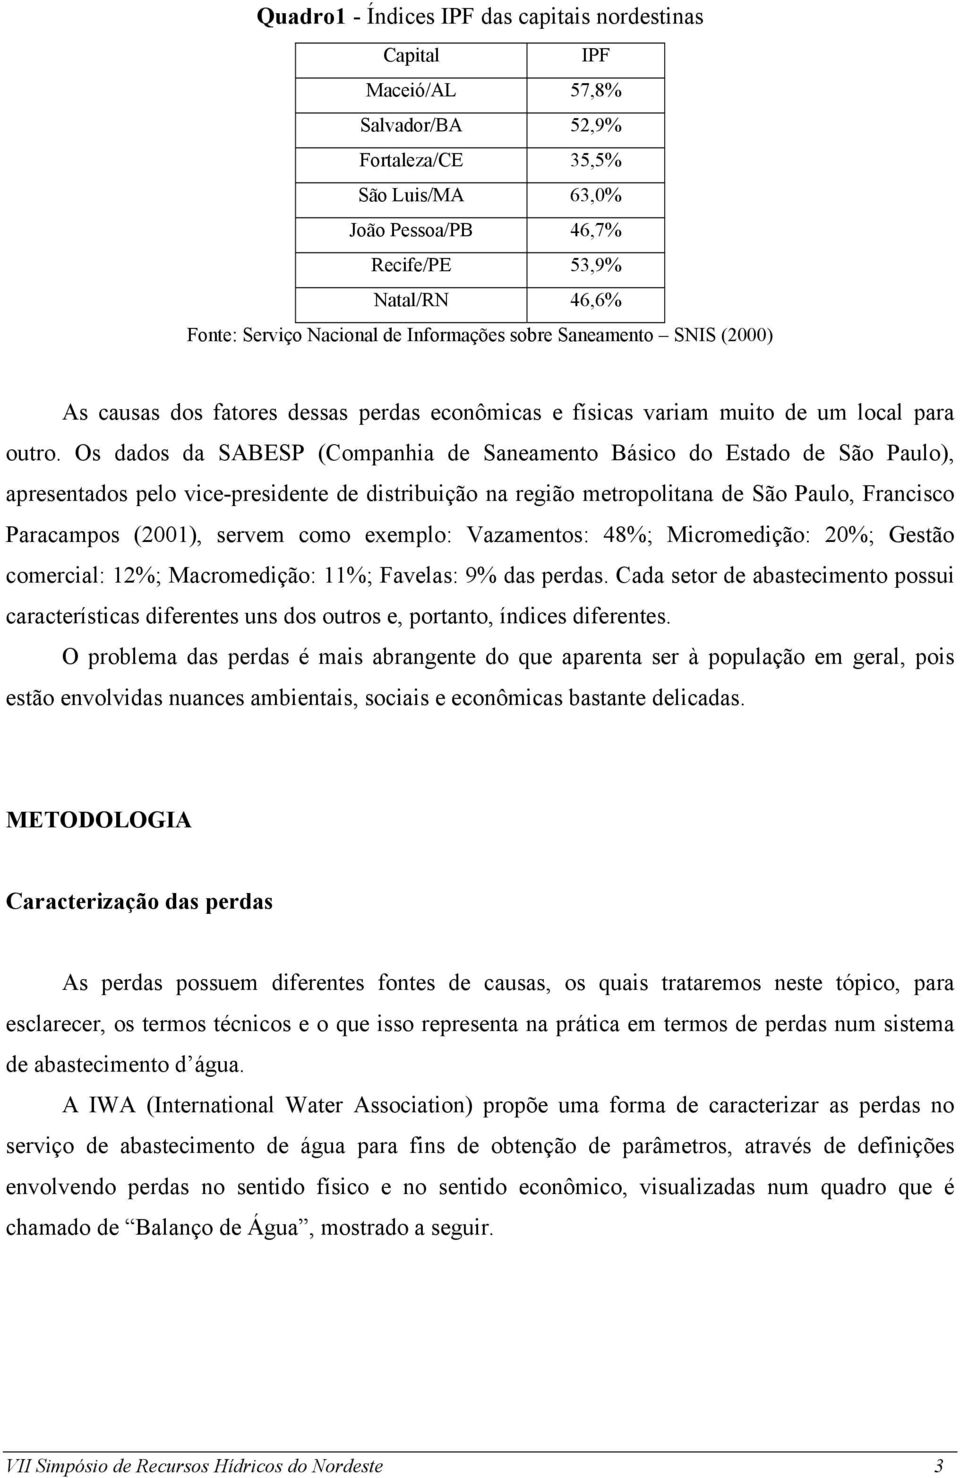 Os dados da SABESP (Companhia de Saneamento Básico do Estado de São Paulo), apresentados pelo vice-presidente de distribuição na região metropolitana de São Paulo, Francisco Paracampos (2001), servem